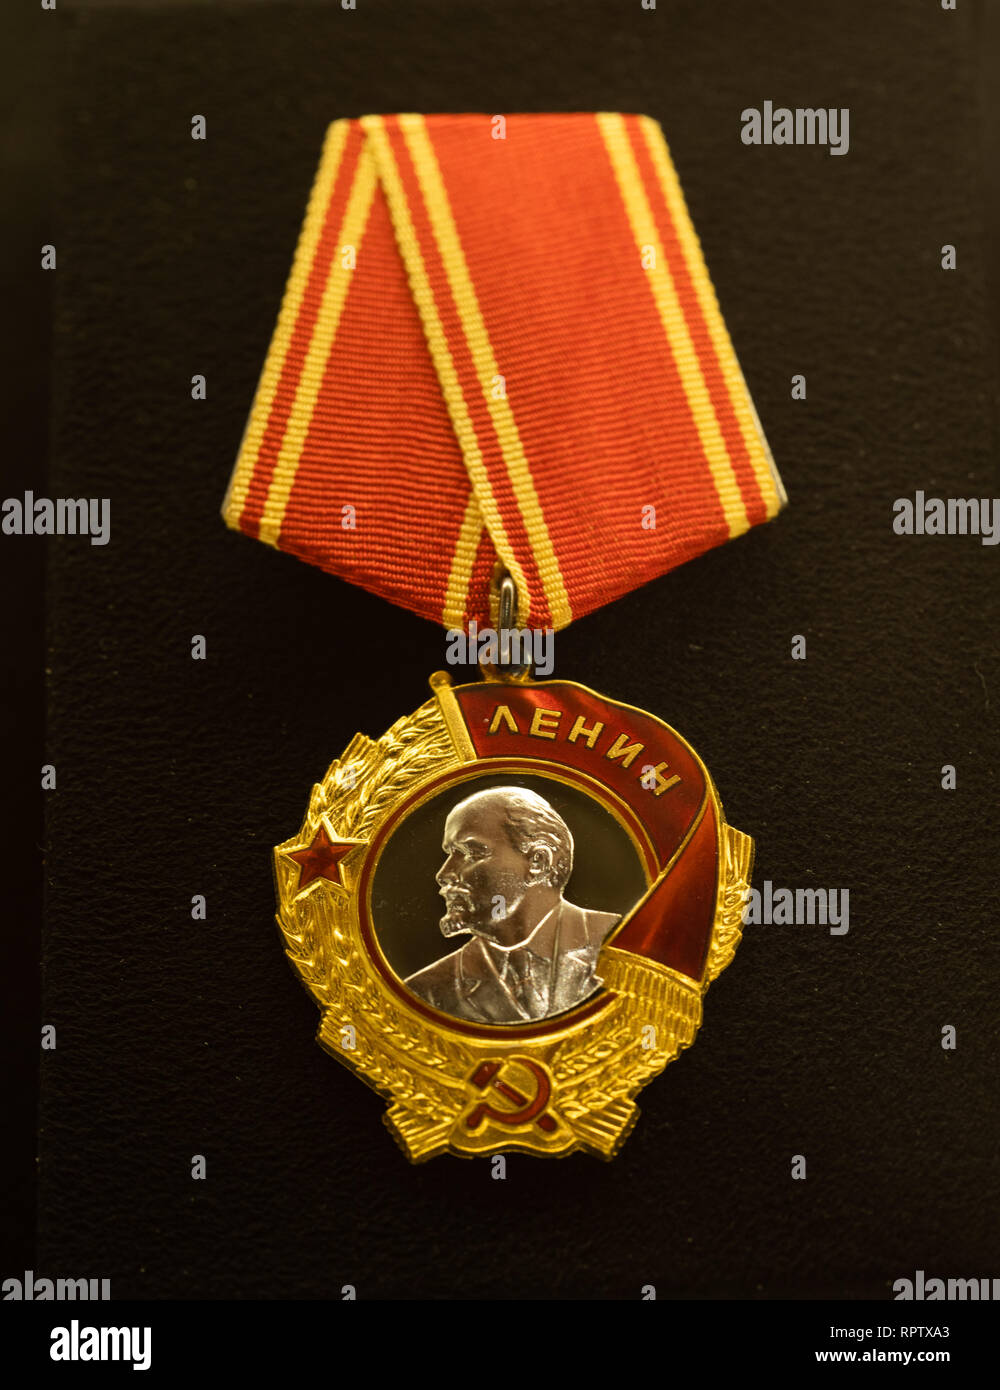 Orden de Lenin de la Unión de Repúblicas Socialistas Soviéticas, atribuidas al Presidente de Finlandia Mauno Koivisto el 24 de noviembre de 1983. Foto de stock